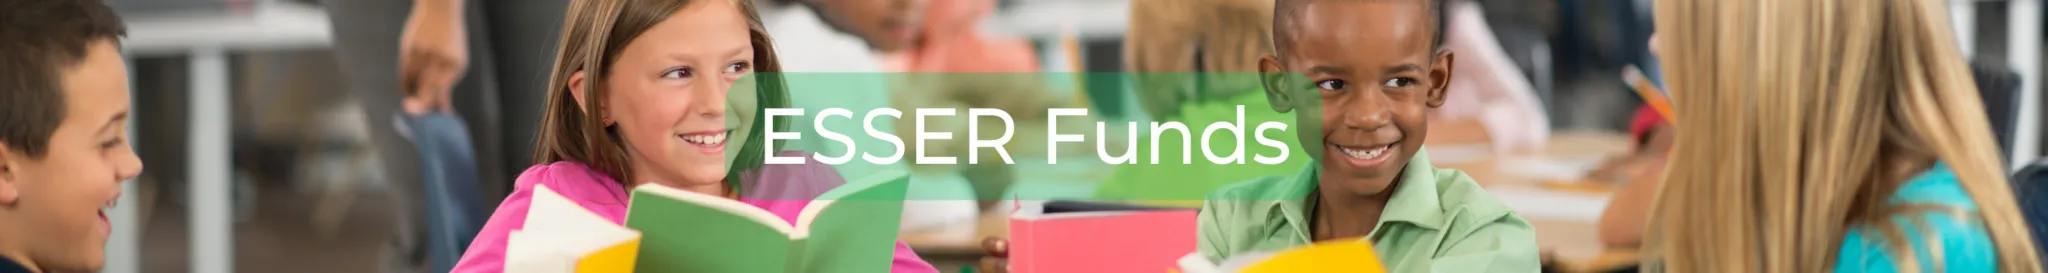 ESSER Funds - Banner-1-2048x273